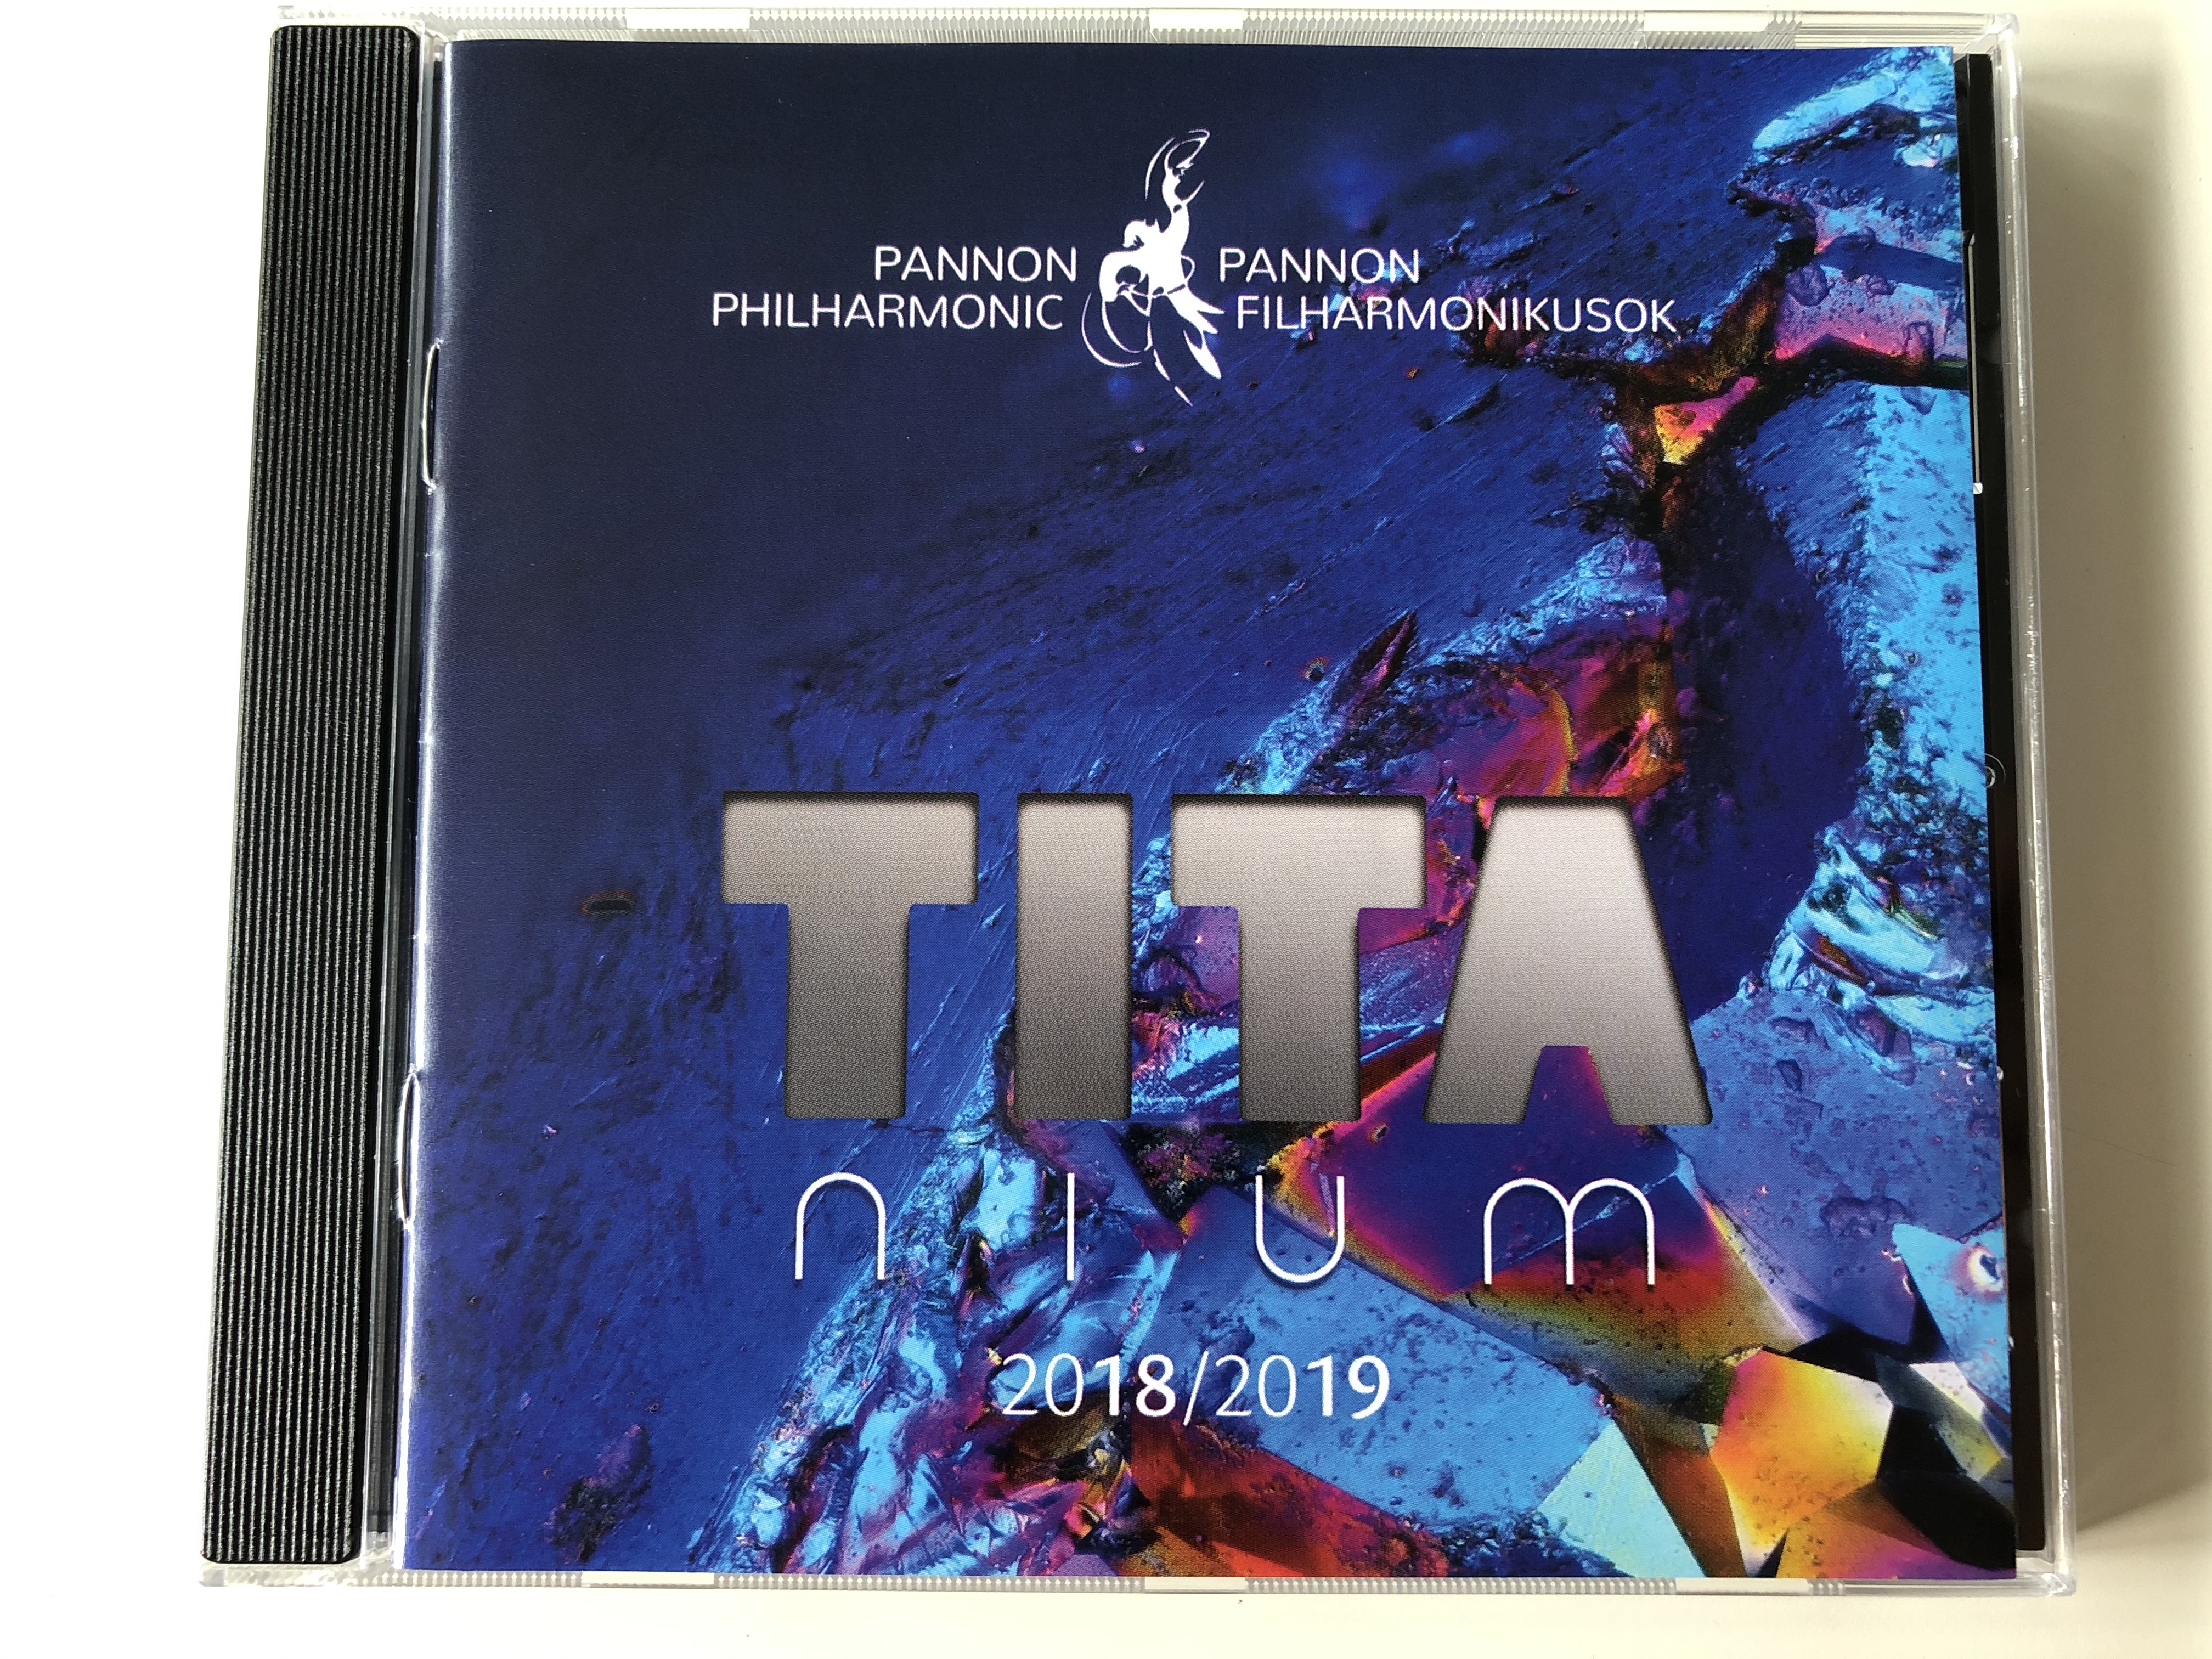 pannon-philharmonic-titanium-20182019-audio-cd-pannonicumcd061-1-.jpg